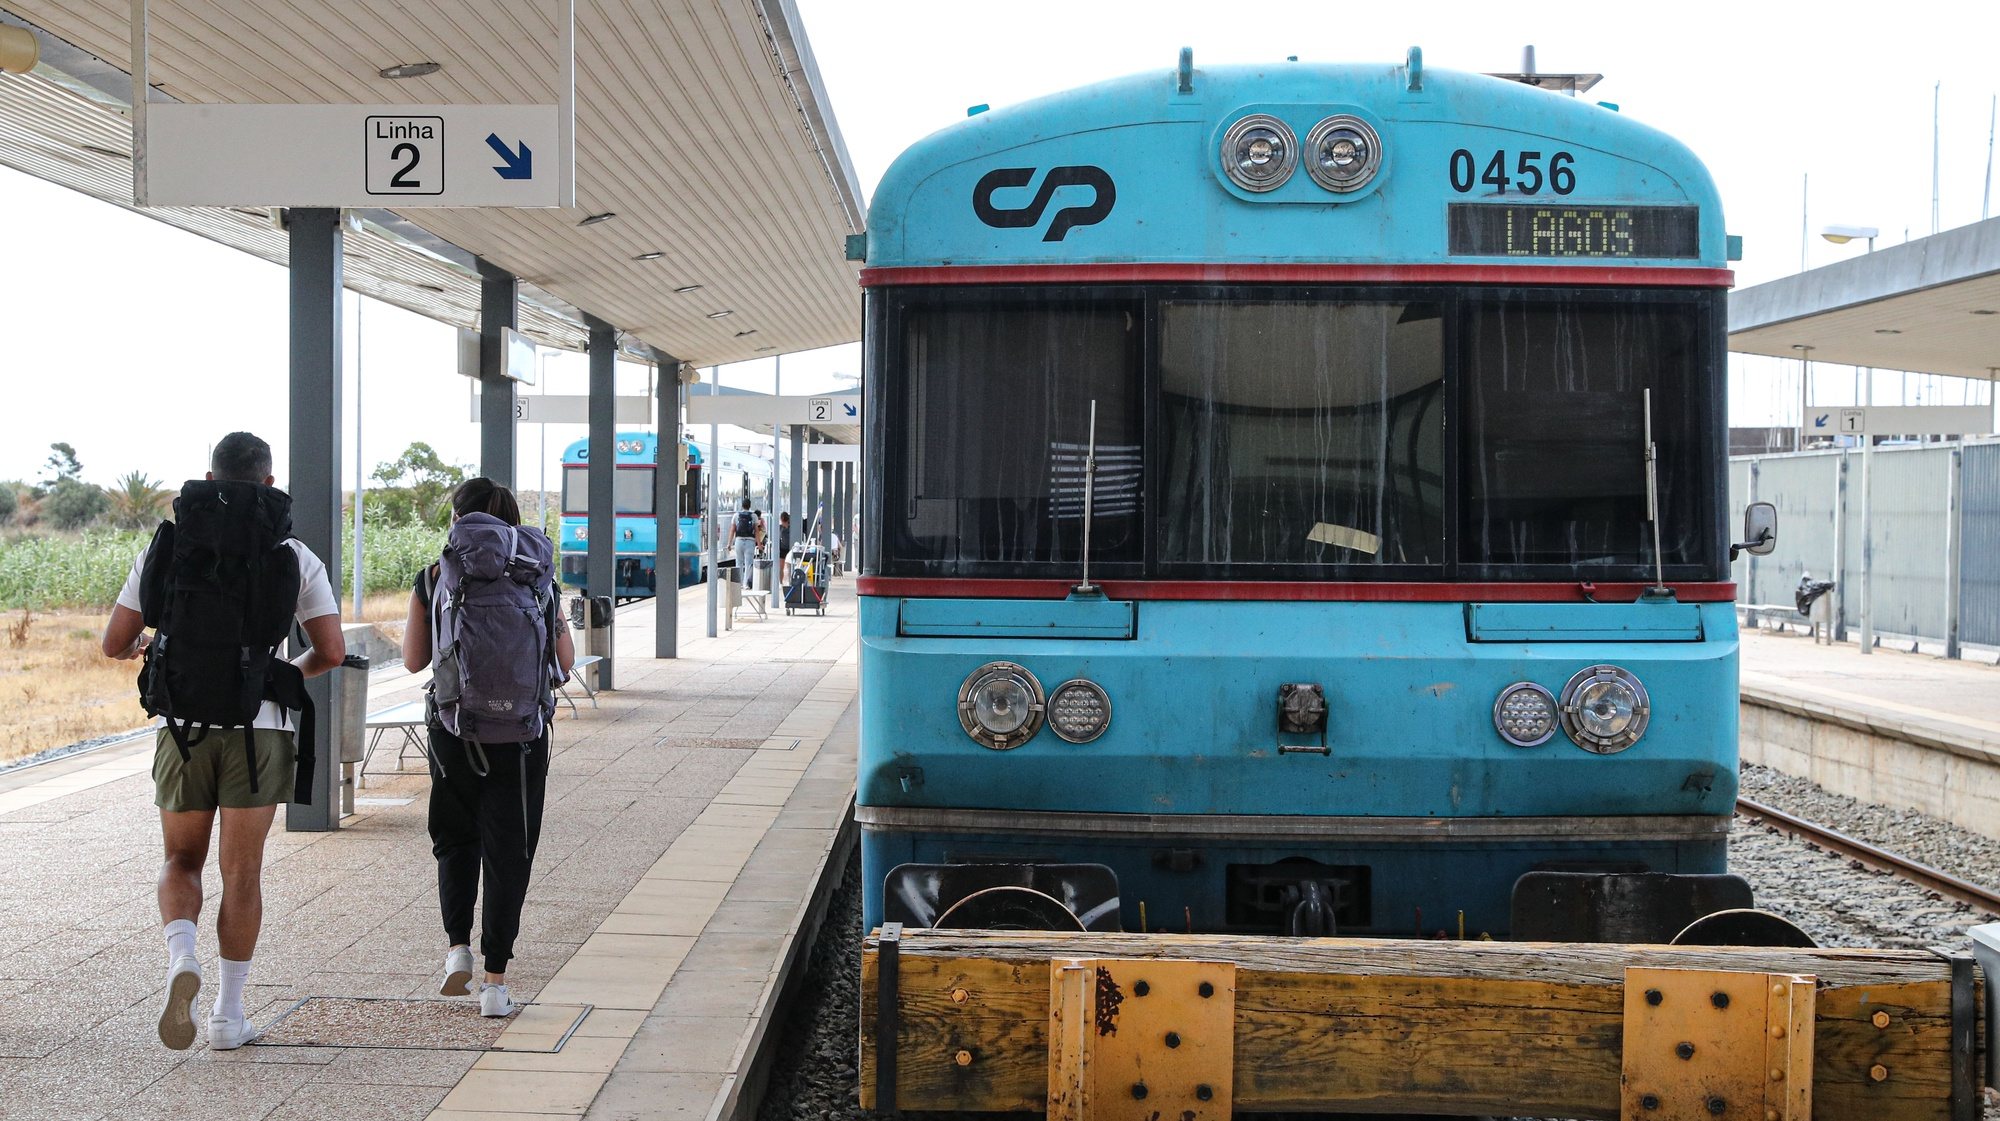 Dois turistas na Estação Ferroviária de Lagos, onde esta manhã foi assinado o auto de consignação da empreitada relativa ao troço da linha do Algarve, Tunes - Lagos, em Lagos, 24 de junho de 2022. LUÍS FORRA/LUSA